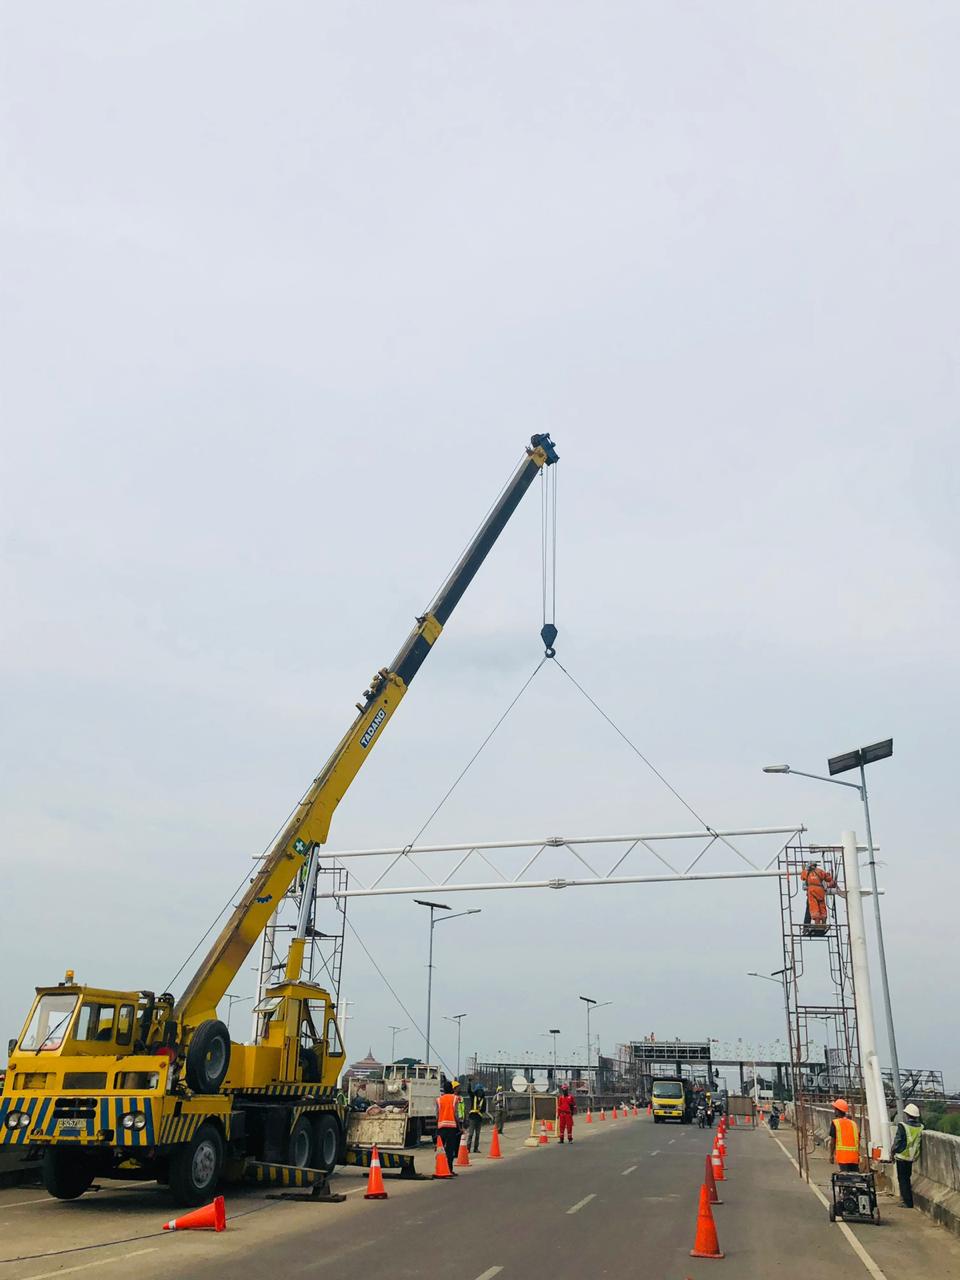 Rental Crane Semarang, Rental Crane Semarang, Sewa Crane Semarang, Persewaan Crane Semarang